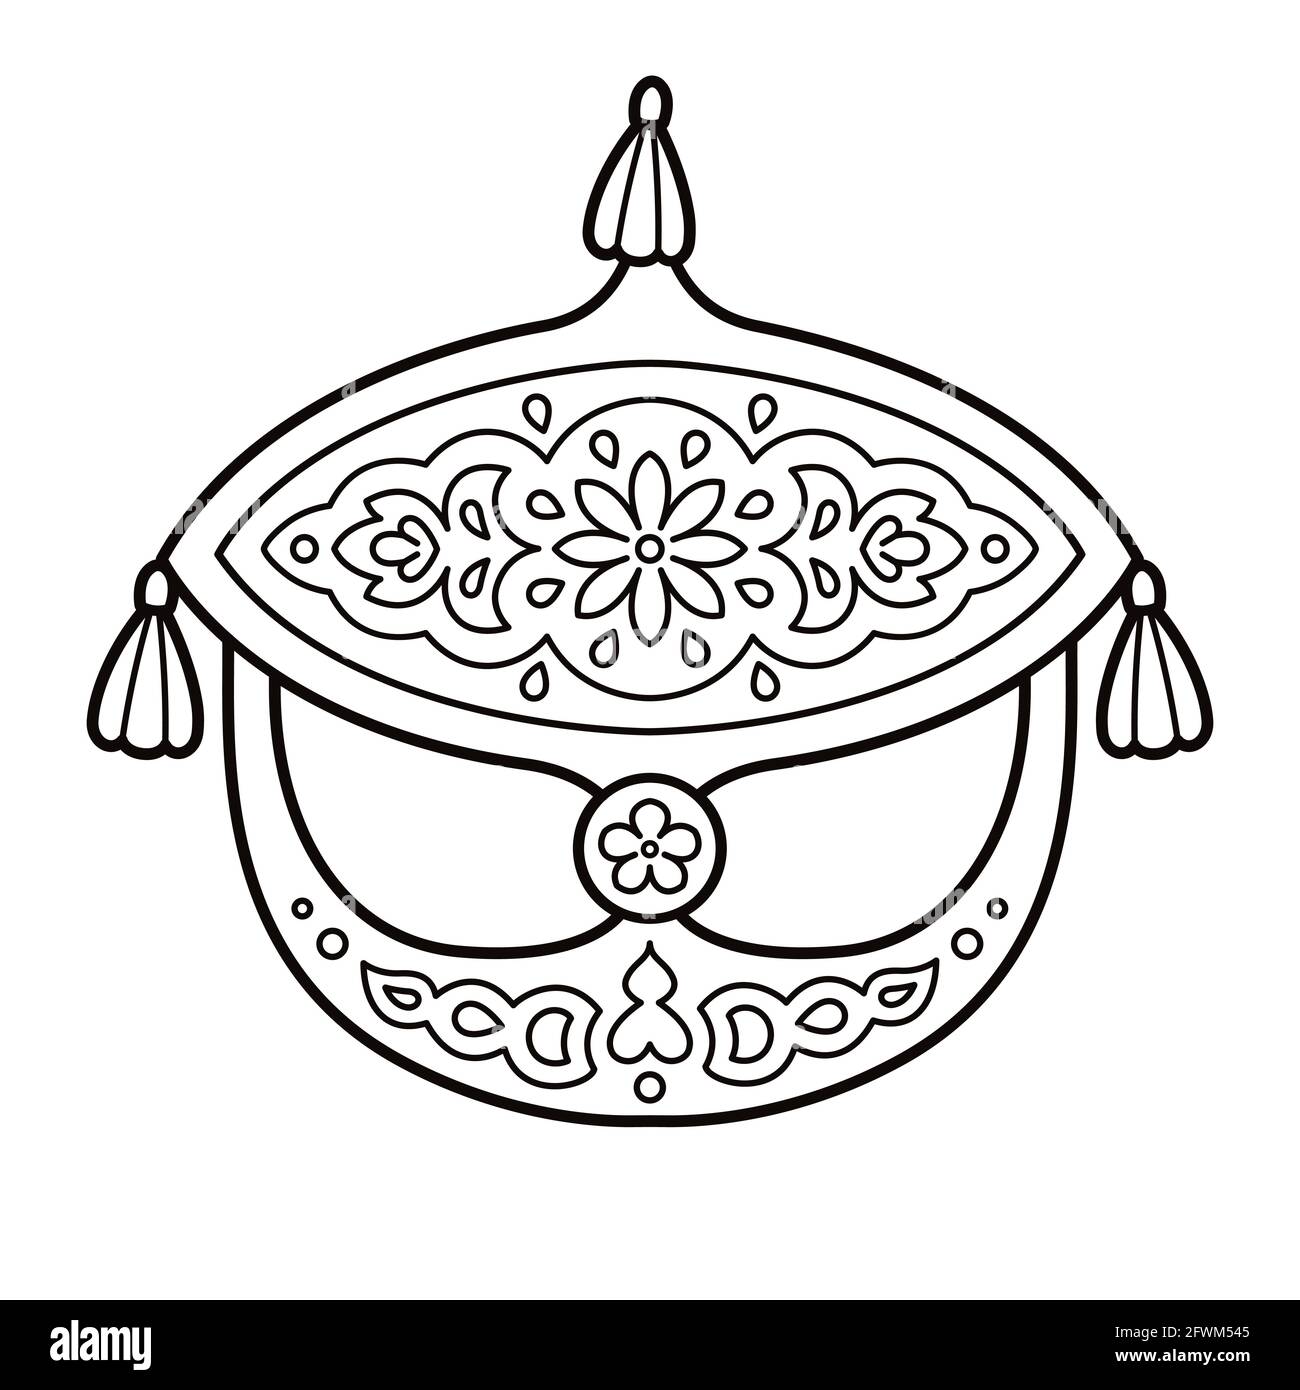 Wau Bulan, traditioneller malaiischer Monddrachen, Symbol von Malaysia. Schwarz-weiße Linienzeichnung für die Färbung. Vektorgrafik Clip Art Illustration. Stock Vektor